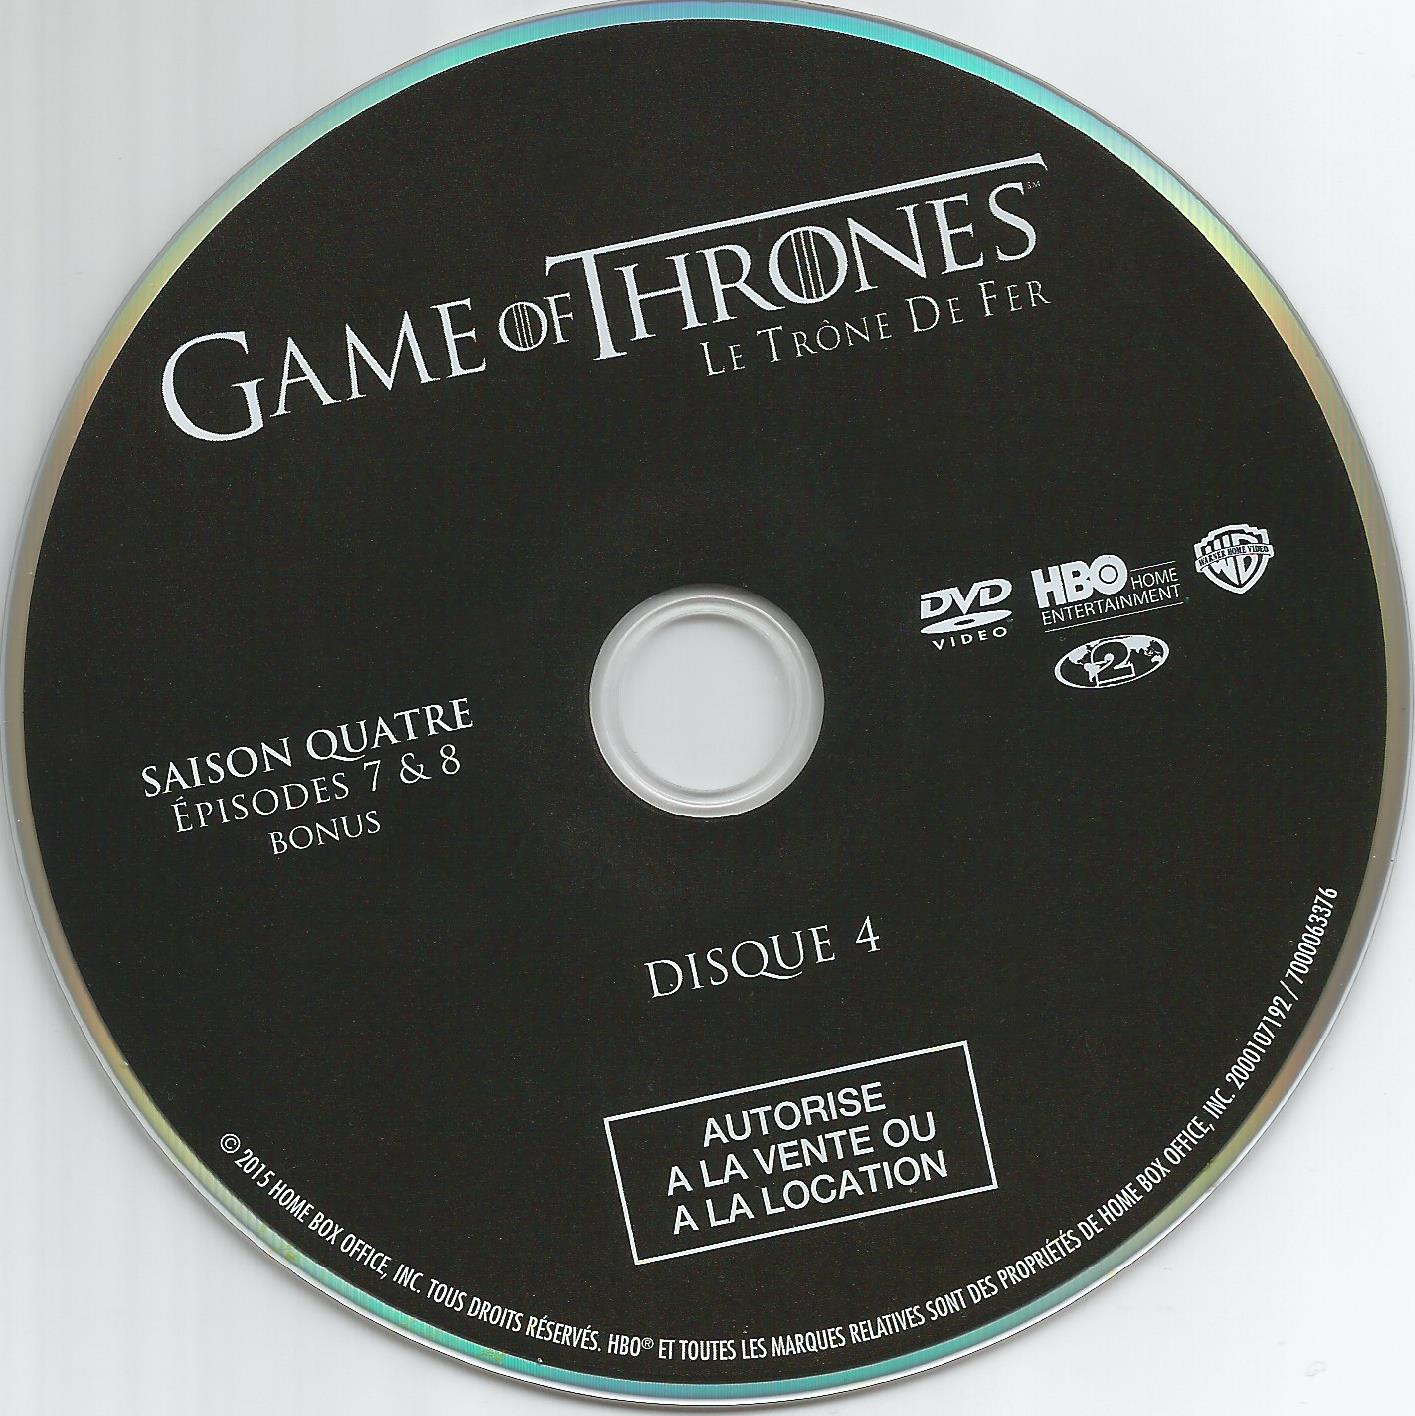 Game of thrones (le trone de fer) Saison 4 DVD 4